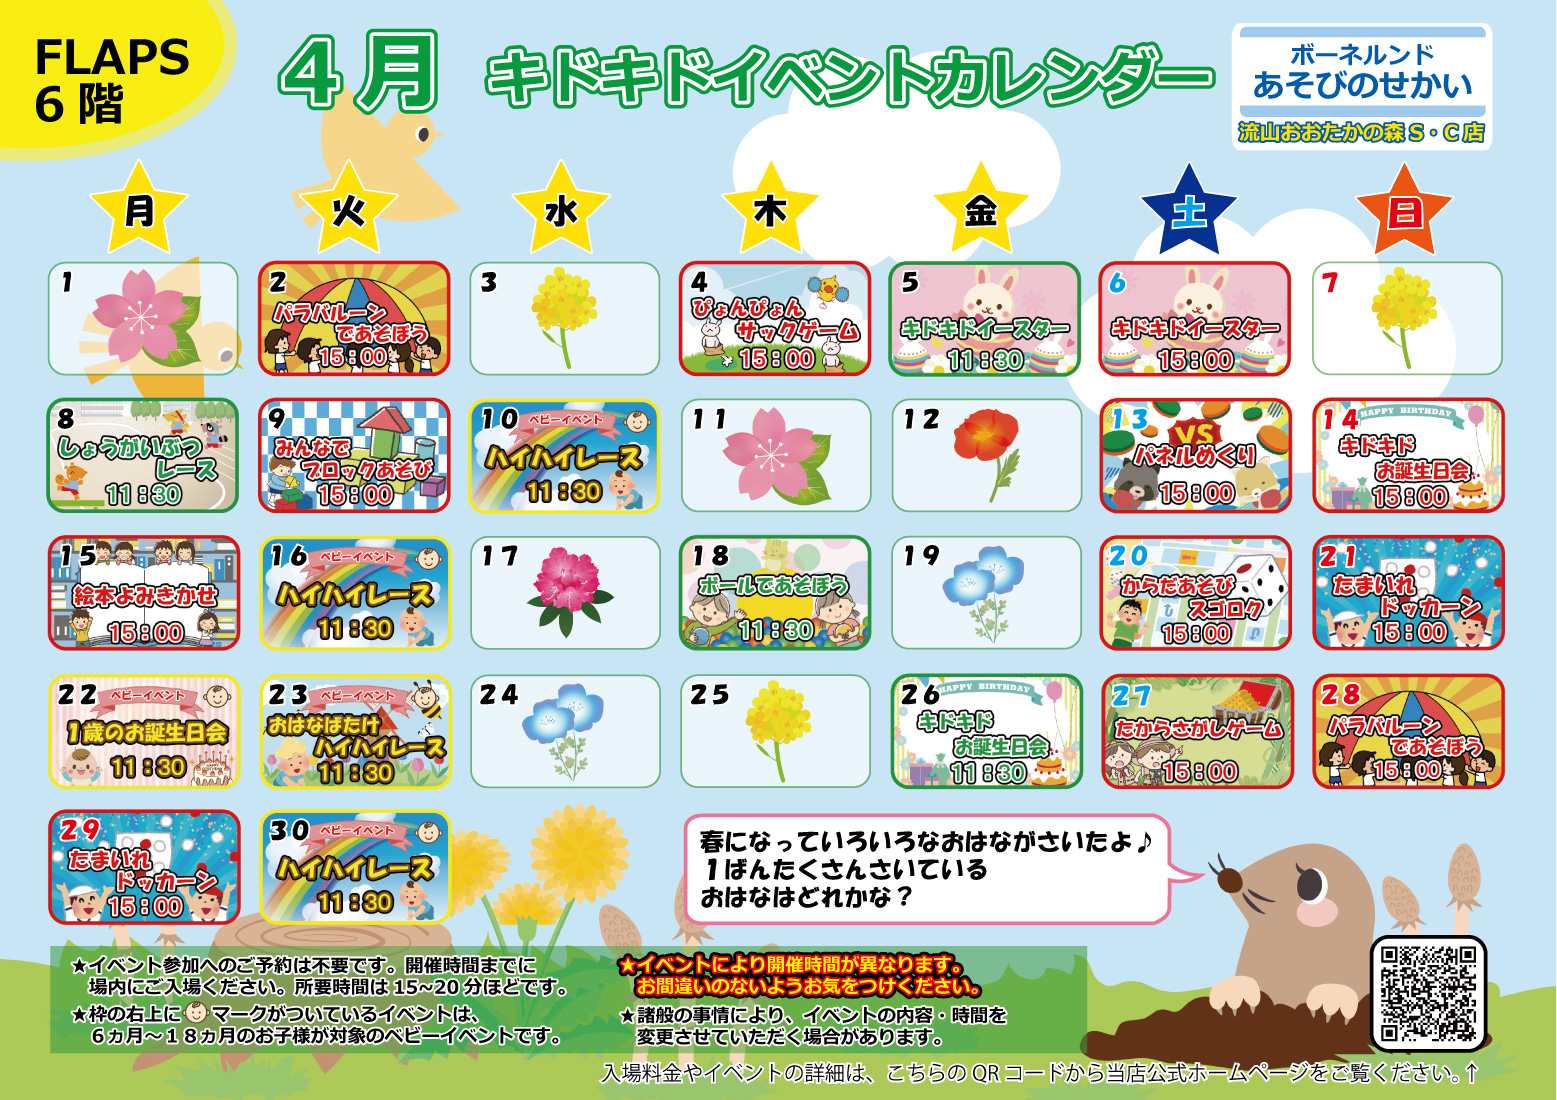 ★4月のイベントカレンダー★